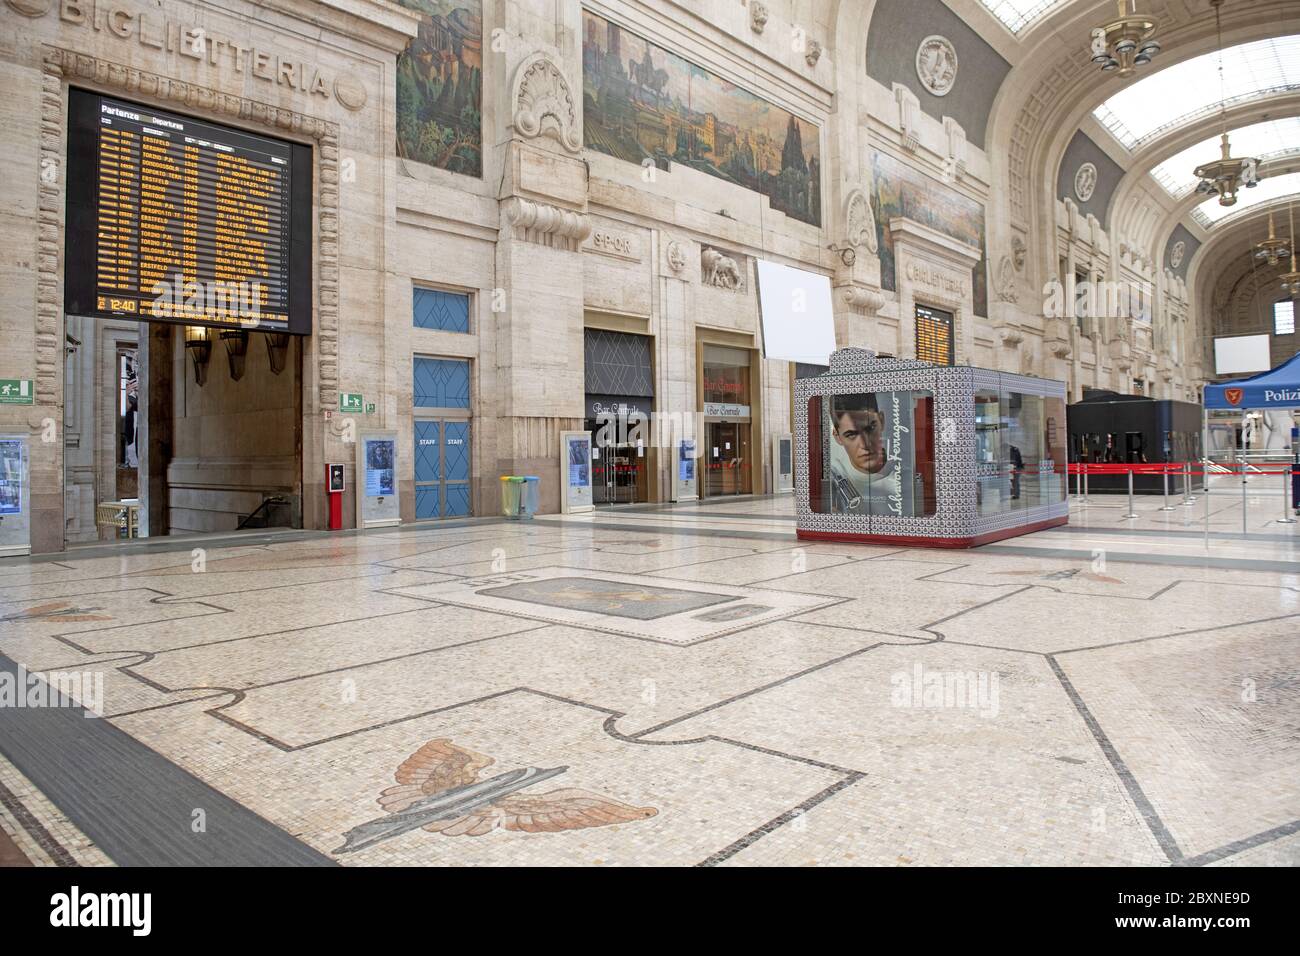 Vider la gare centrale pendant le confinement en raison de l'urgence du coronavirus, à Milan, Italie. Banque D'Images